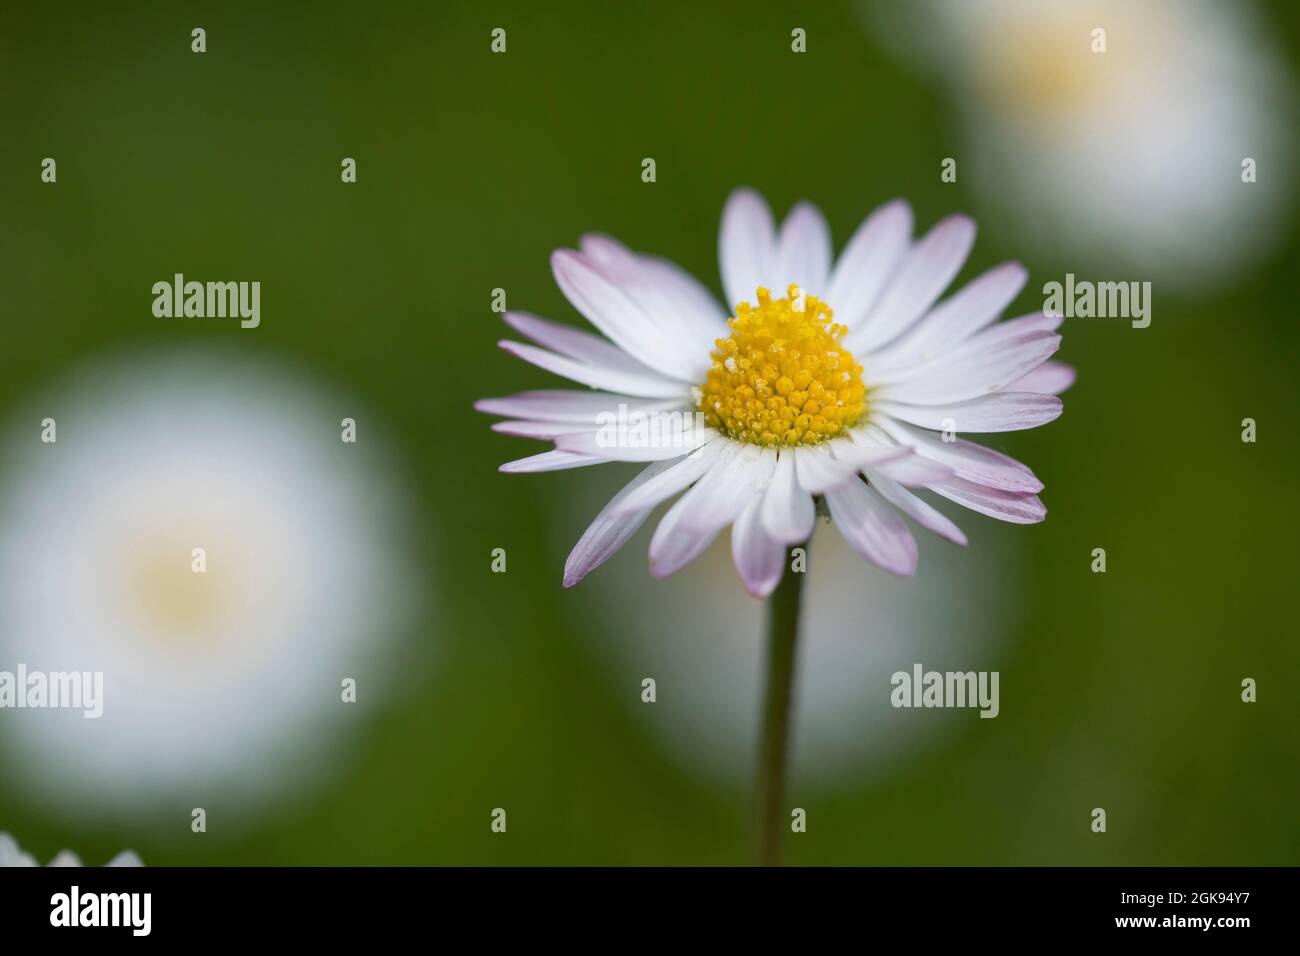 common daisy, lawn daisy, English daisy (Bellis perennis), Flower head, Germany Stock Photo